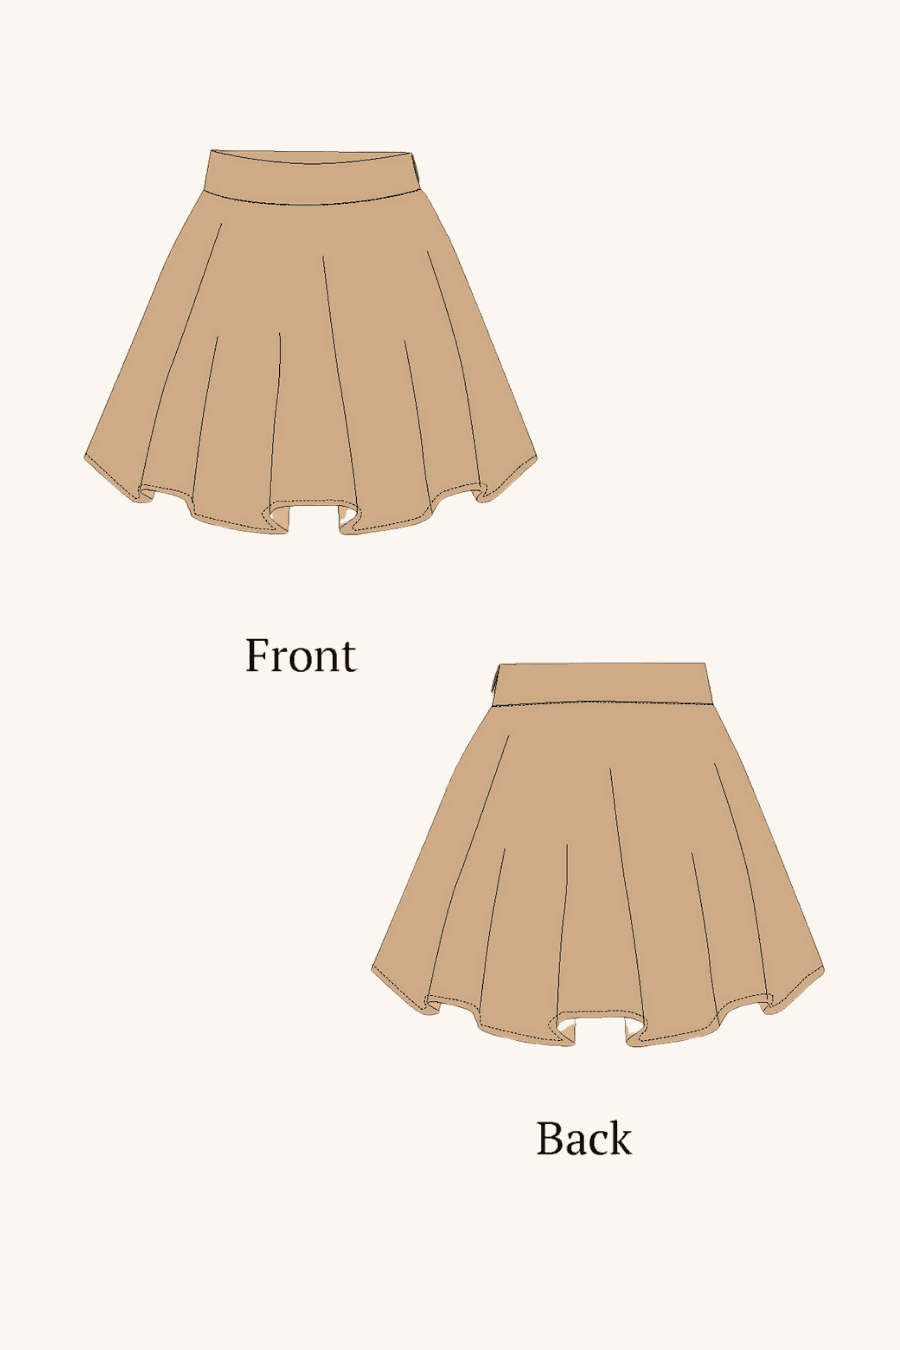 'Poppy' Skater Skirt Sewing Pattern